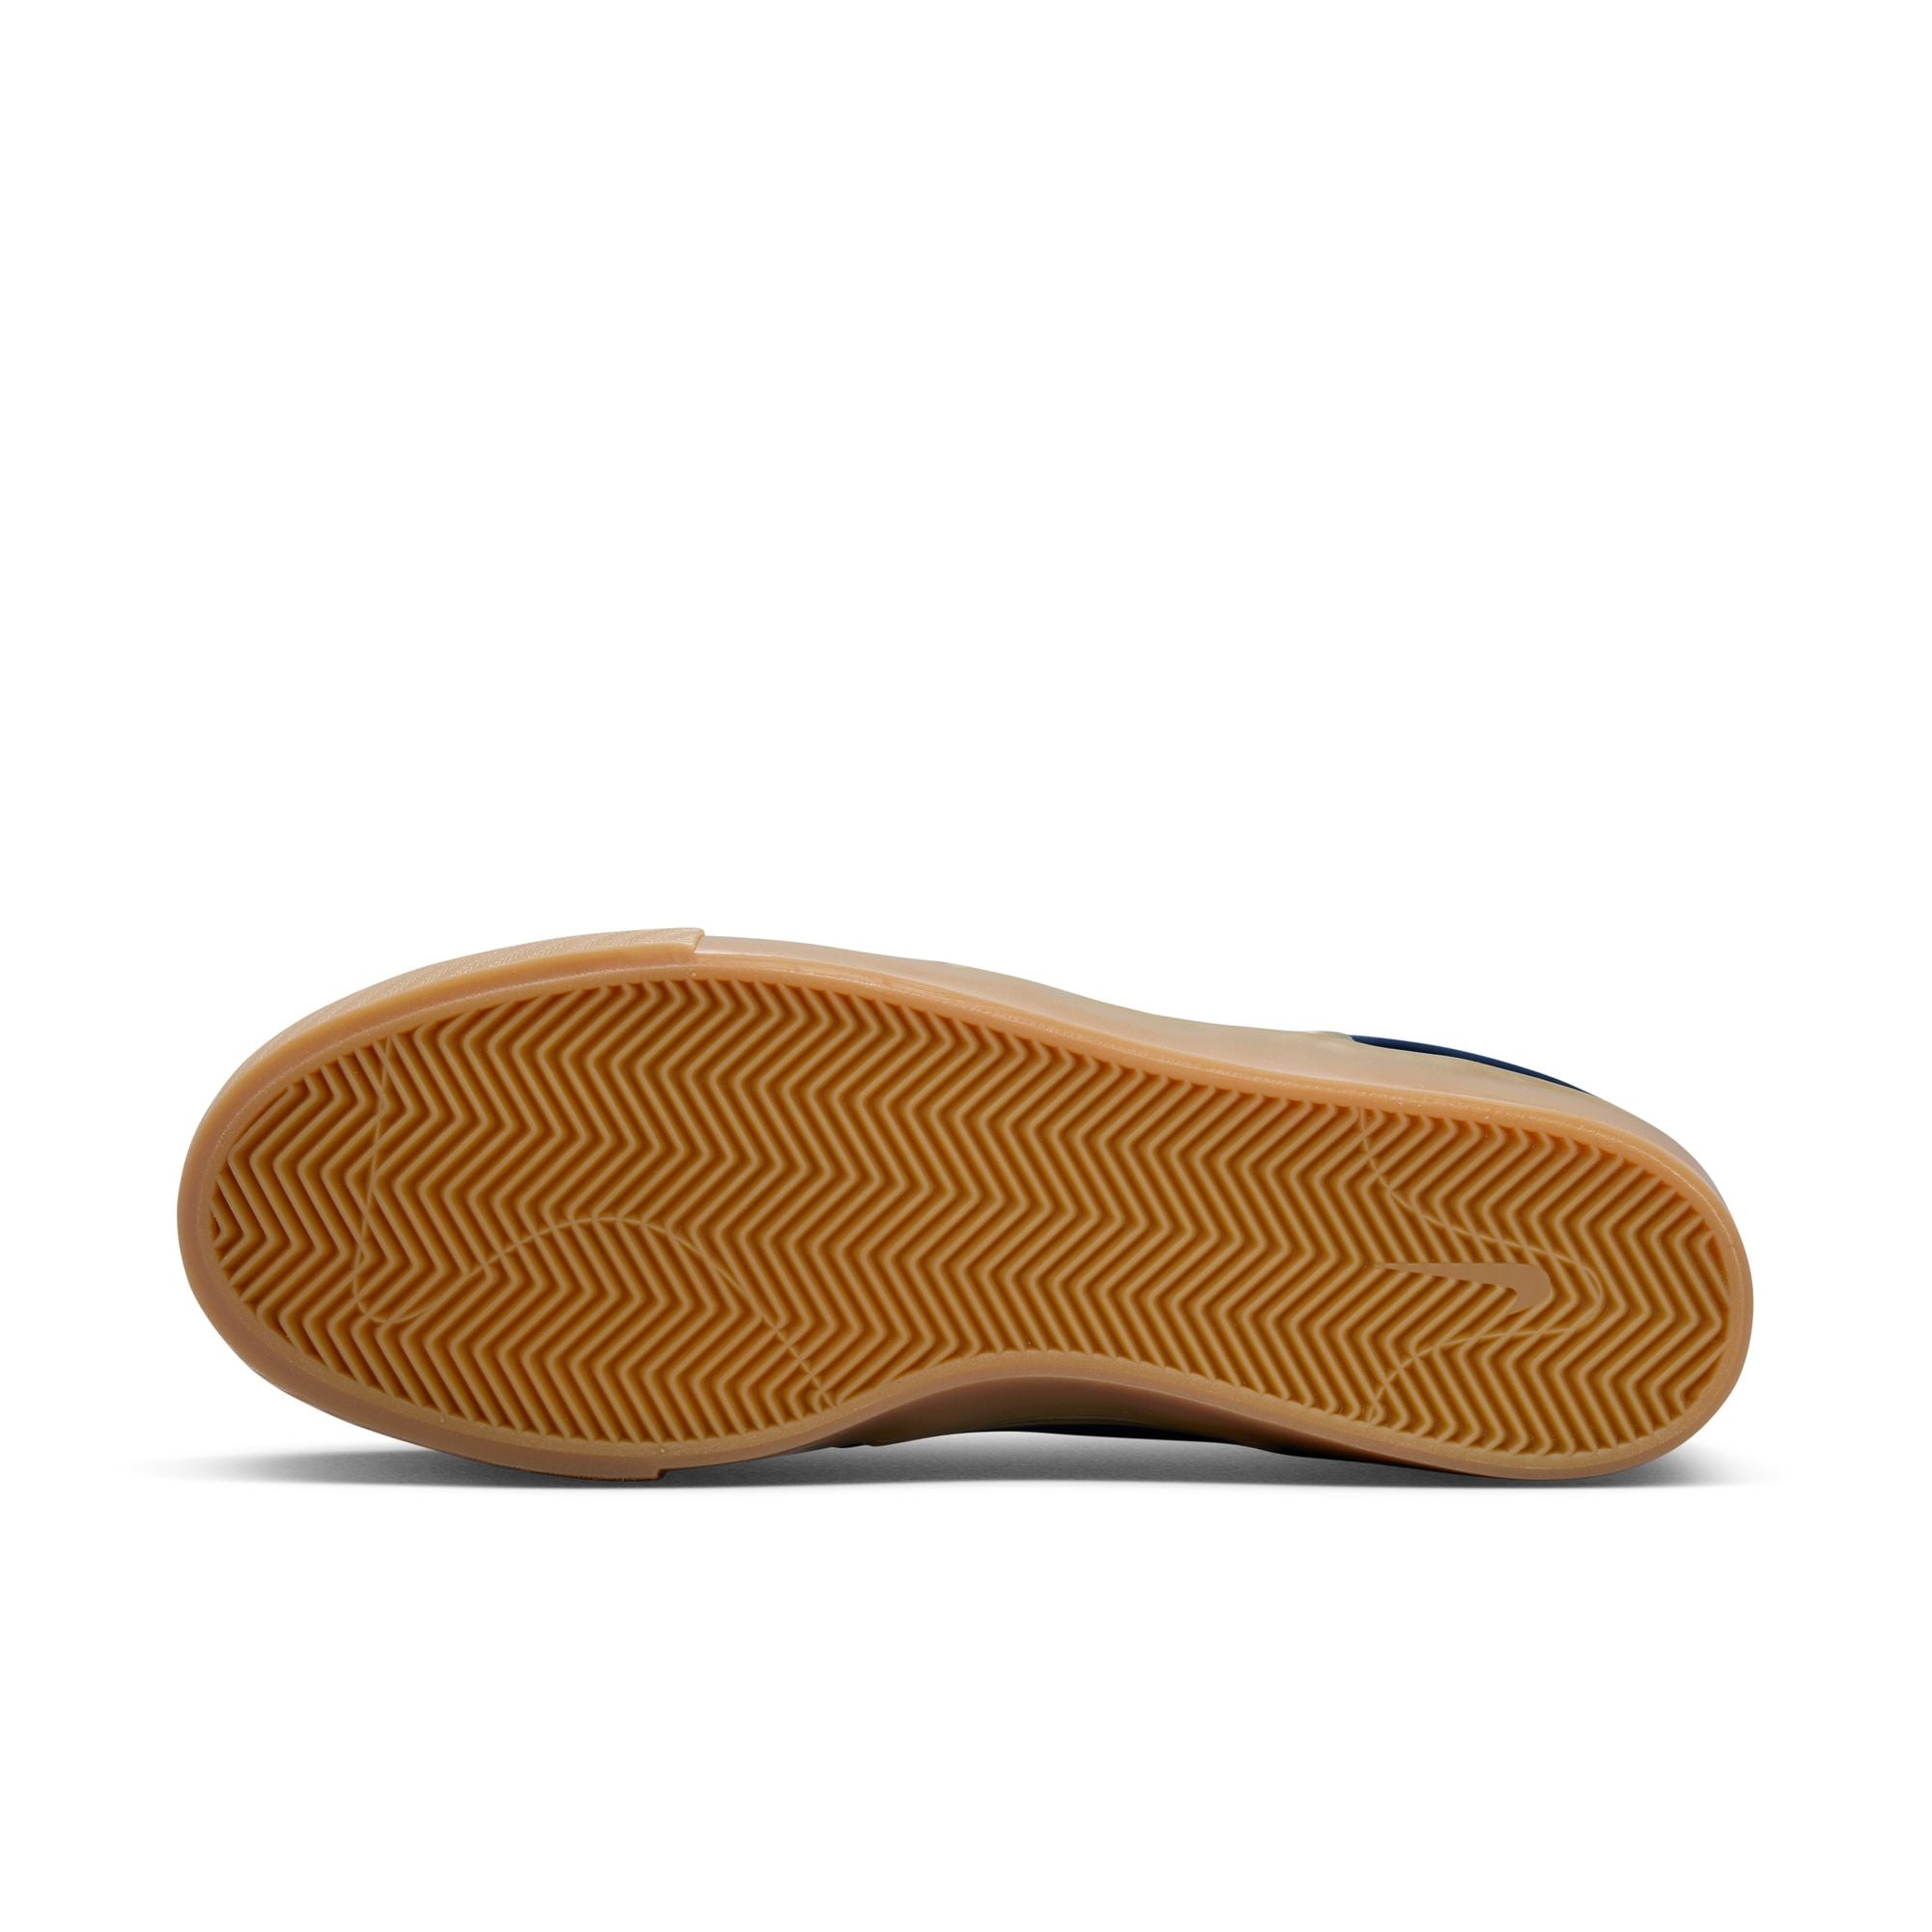 Nike SB ISO Janoski OG+ Shoes - Navy/White-Gum-Light Brown